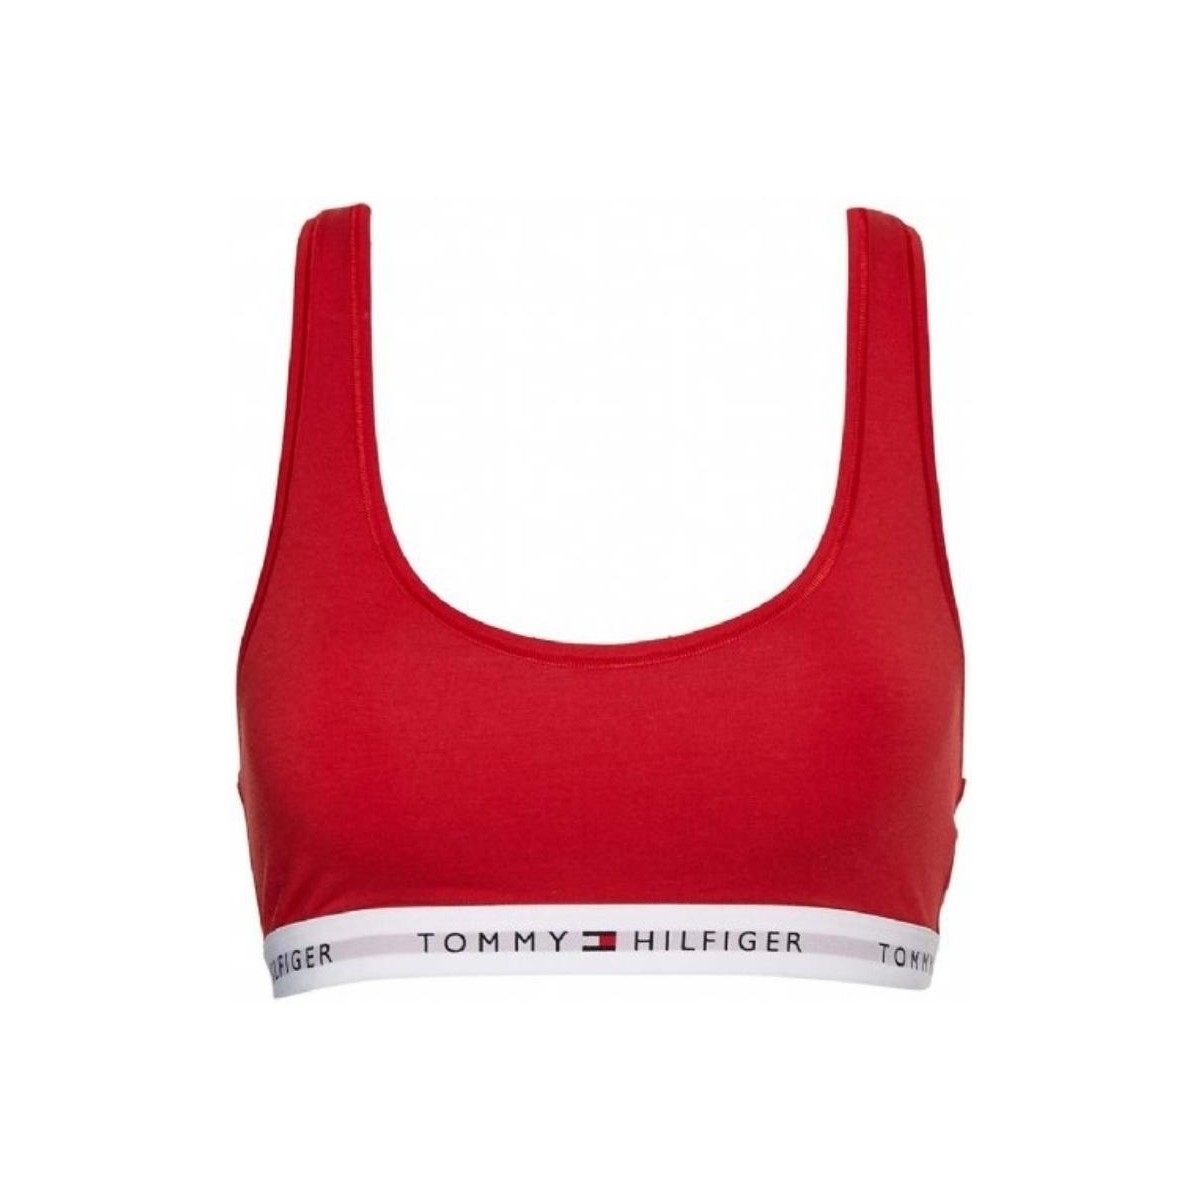 Vêtements Femme Brassières de sport Tommy Hilfiger Brassiere sans rembourrage  Ref 5858 Rouge